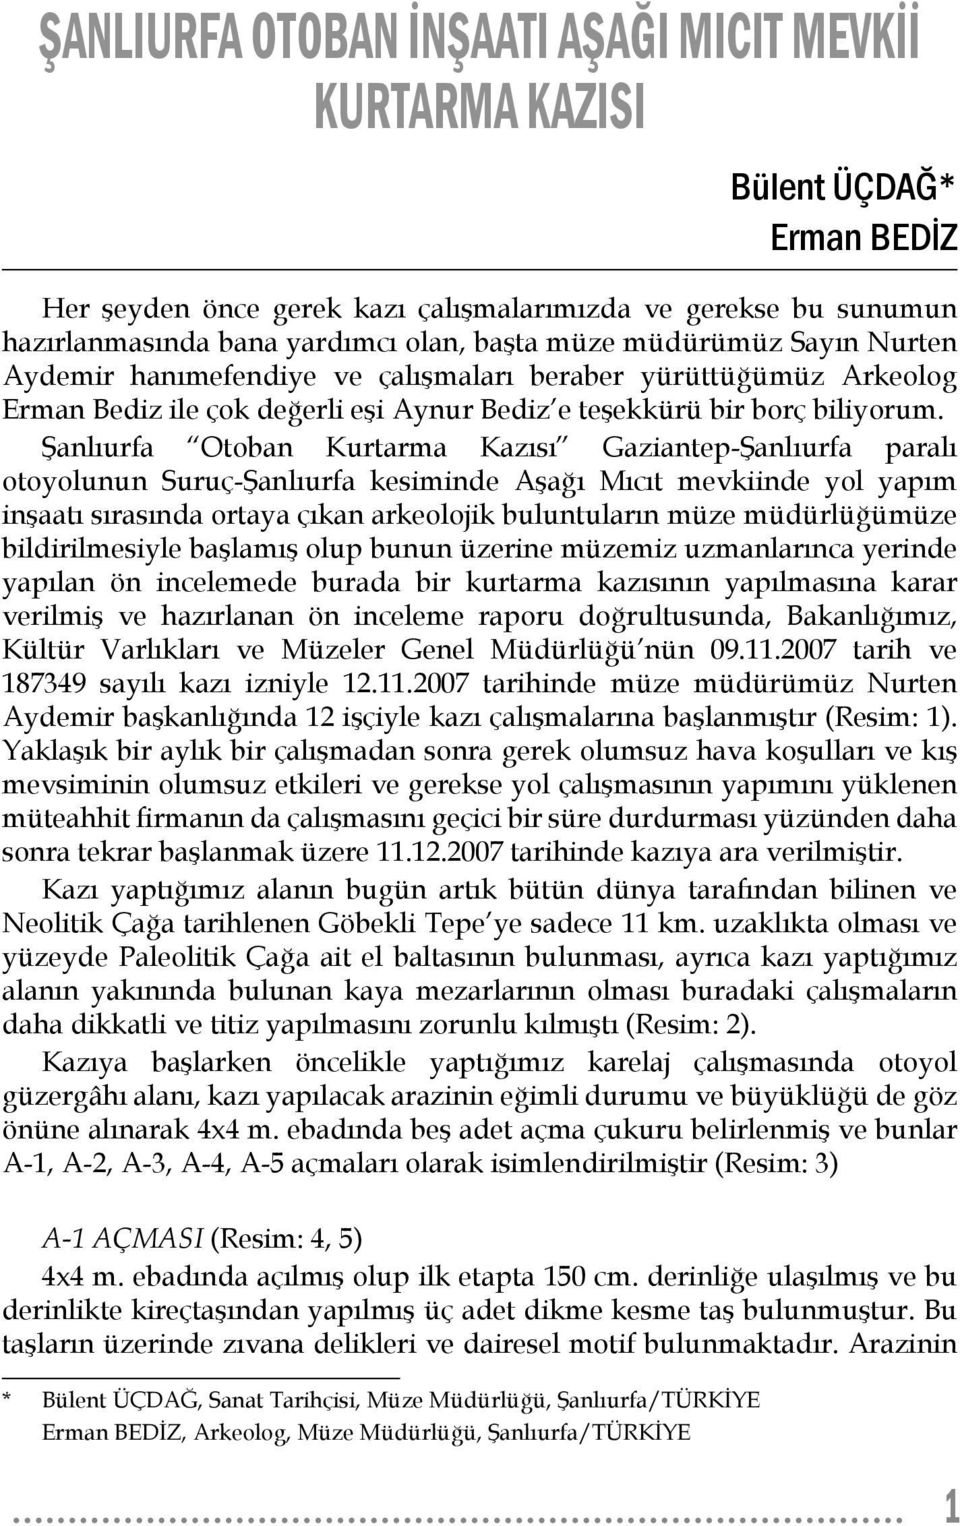 Şanlıurfa Otoban Kurtarma Kazısı Gaziantep-Şanlıurfa paralı otoyolunun Suruç-Şanlıurfa kesiminde Aşağı Mıcıt mevkiinde yol yapım inşaatı sırasında ortaya çıkan arkeolojik buluntuların müze